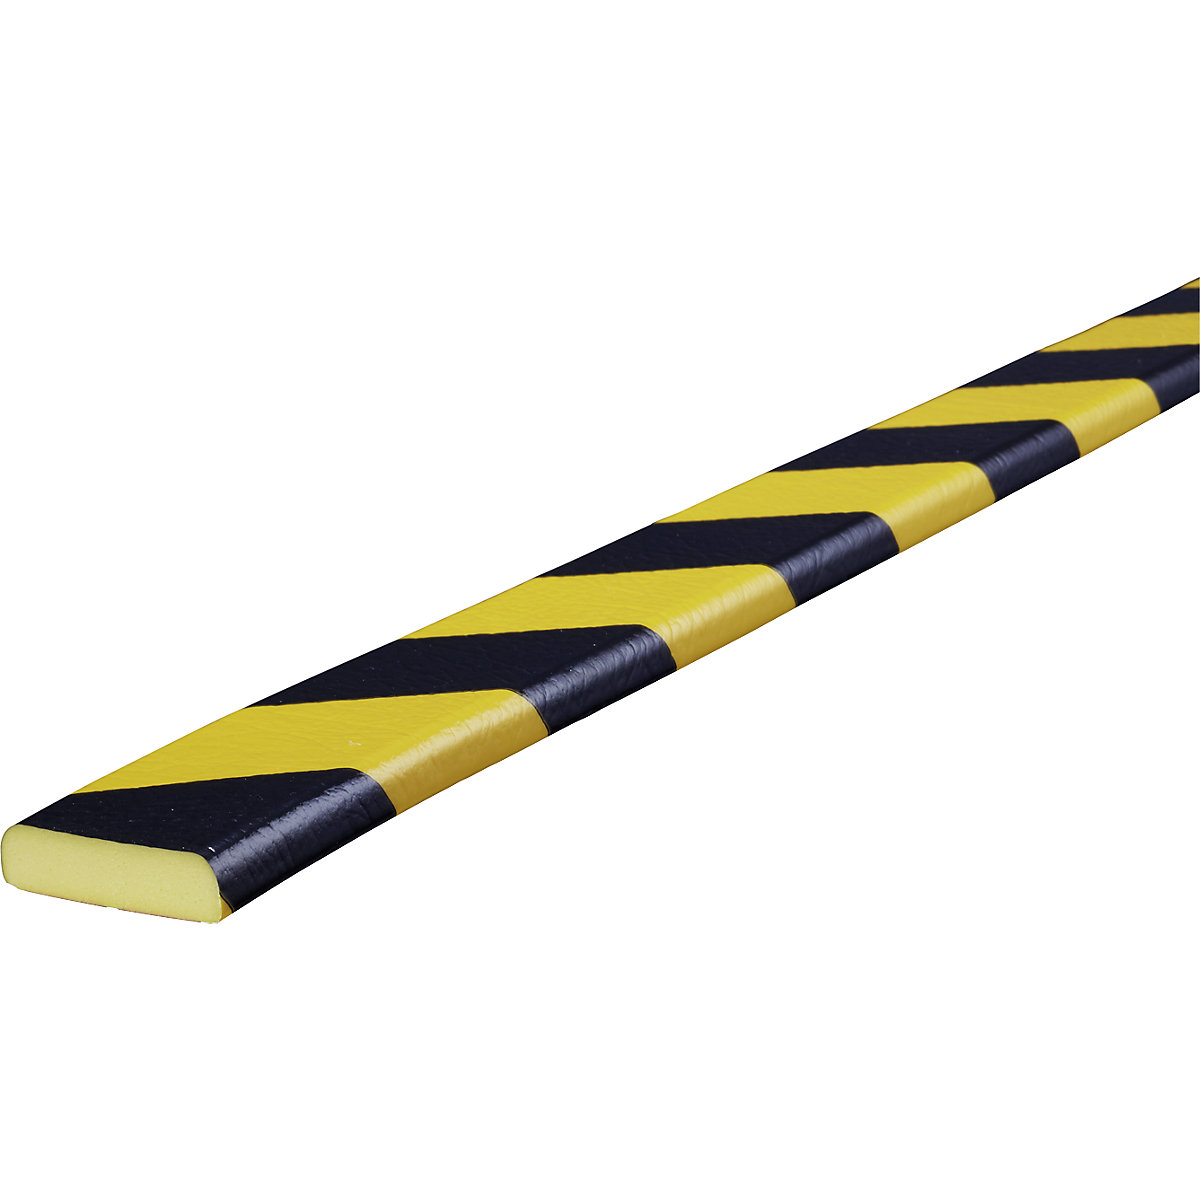 Proteção de superfícies Knuffi® – SHG, tipo F, 1 rolo de 50 m, preto/amarelo-19